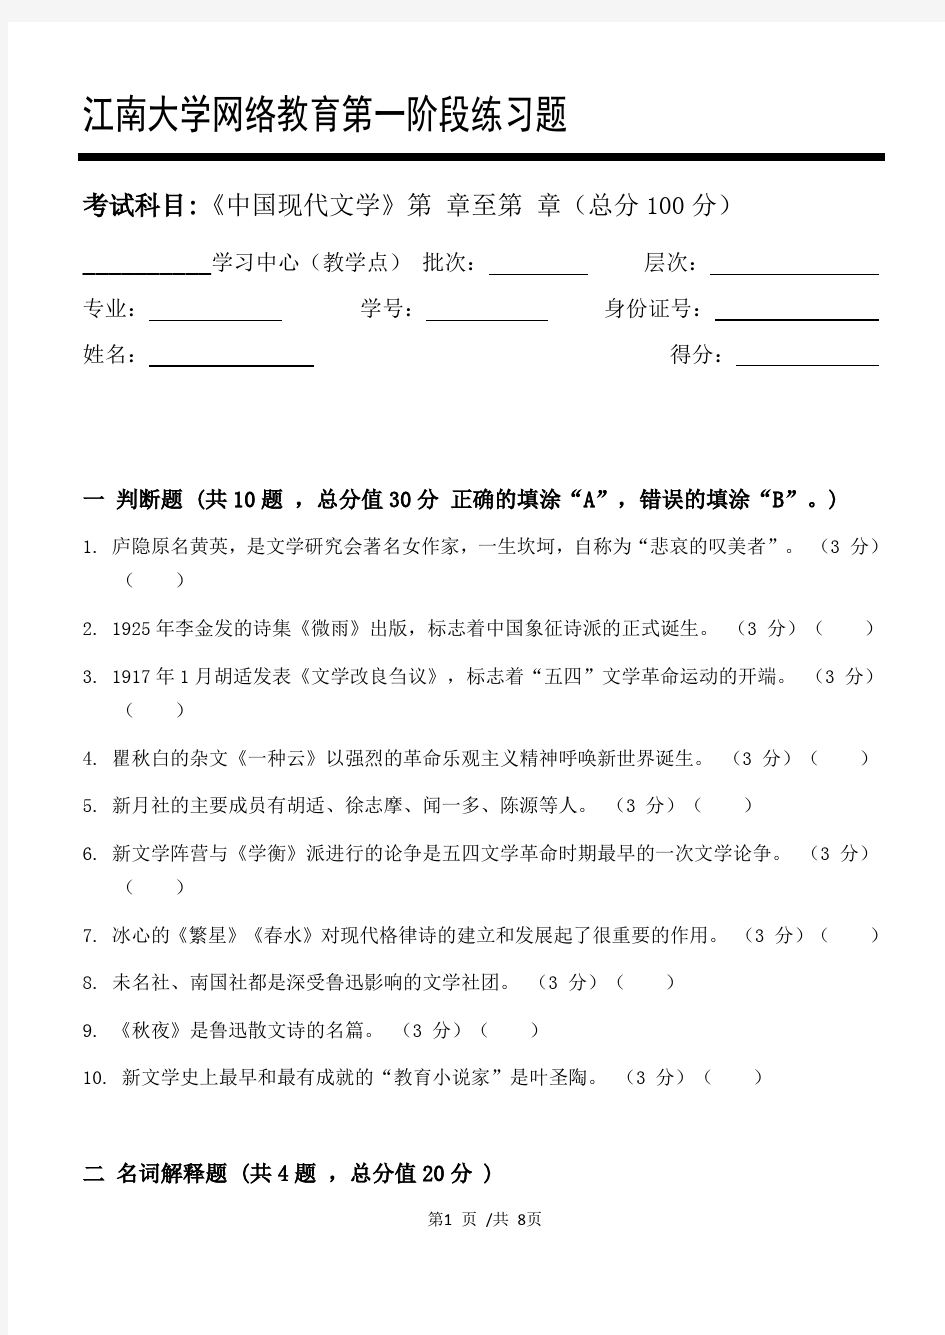 中国现代文学第1阶段练习题江大考试题库及答案一科共有三个阶段,这是其中一个阶段。答案在最